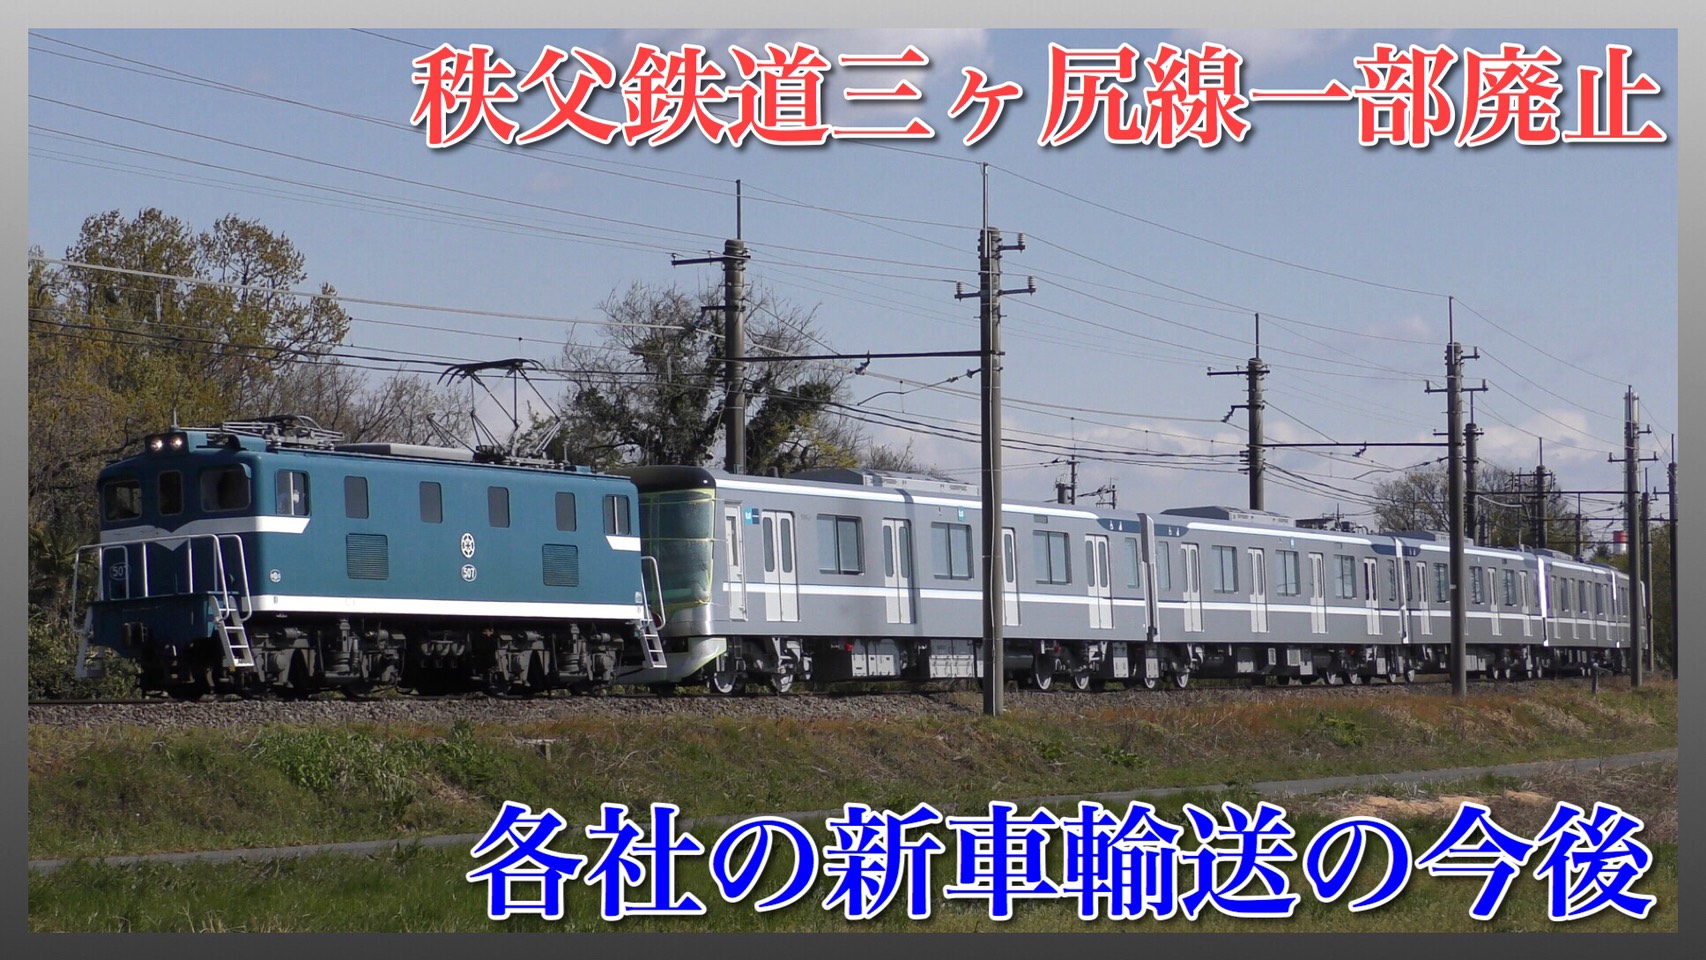 秩父鉄道 三ヶ尻線部分廃止 東武などの新造車両輸送の今後は 鉄道ファンの待合室